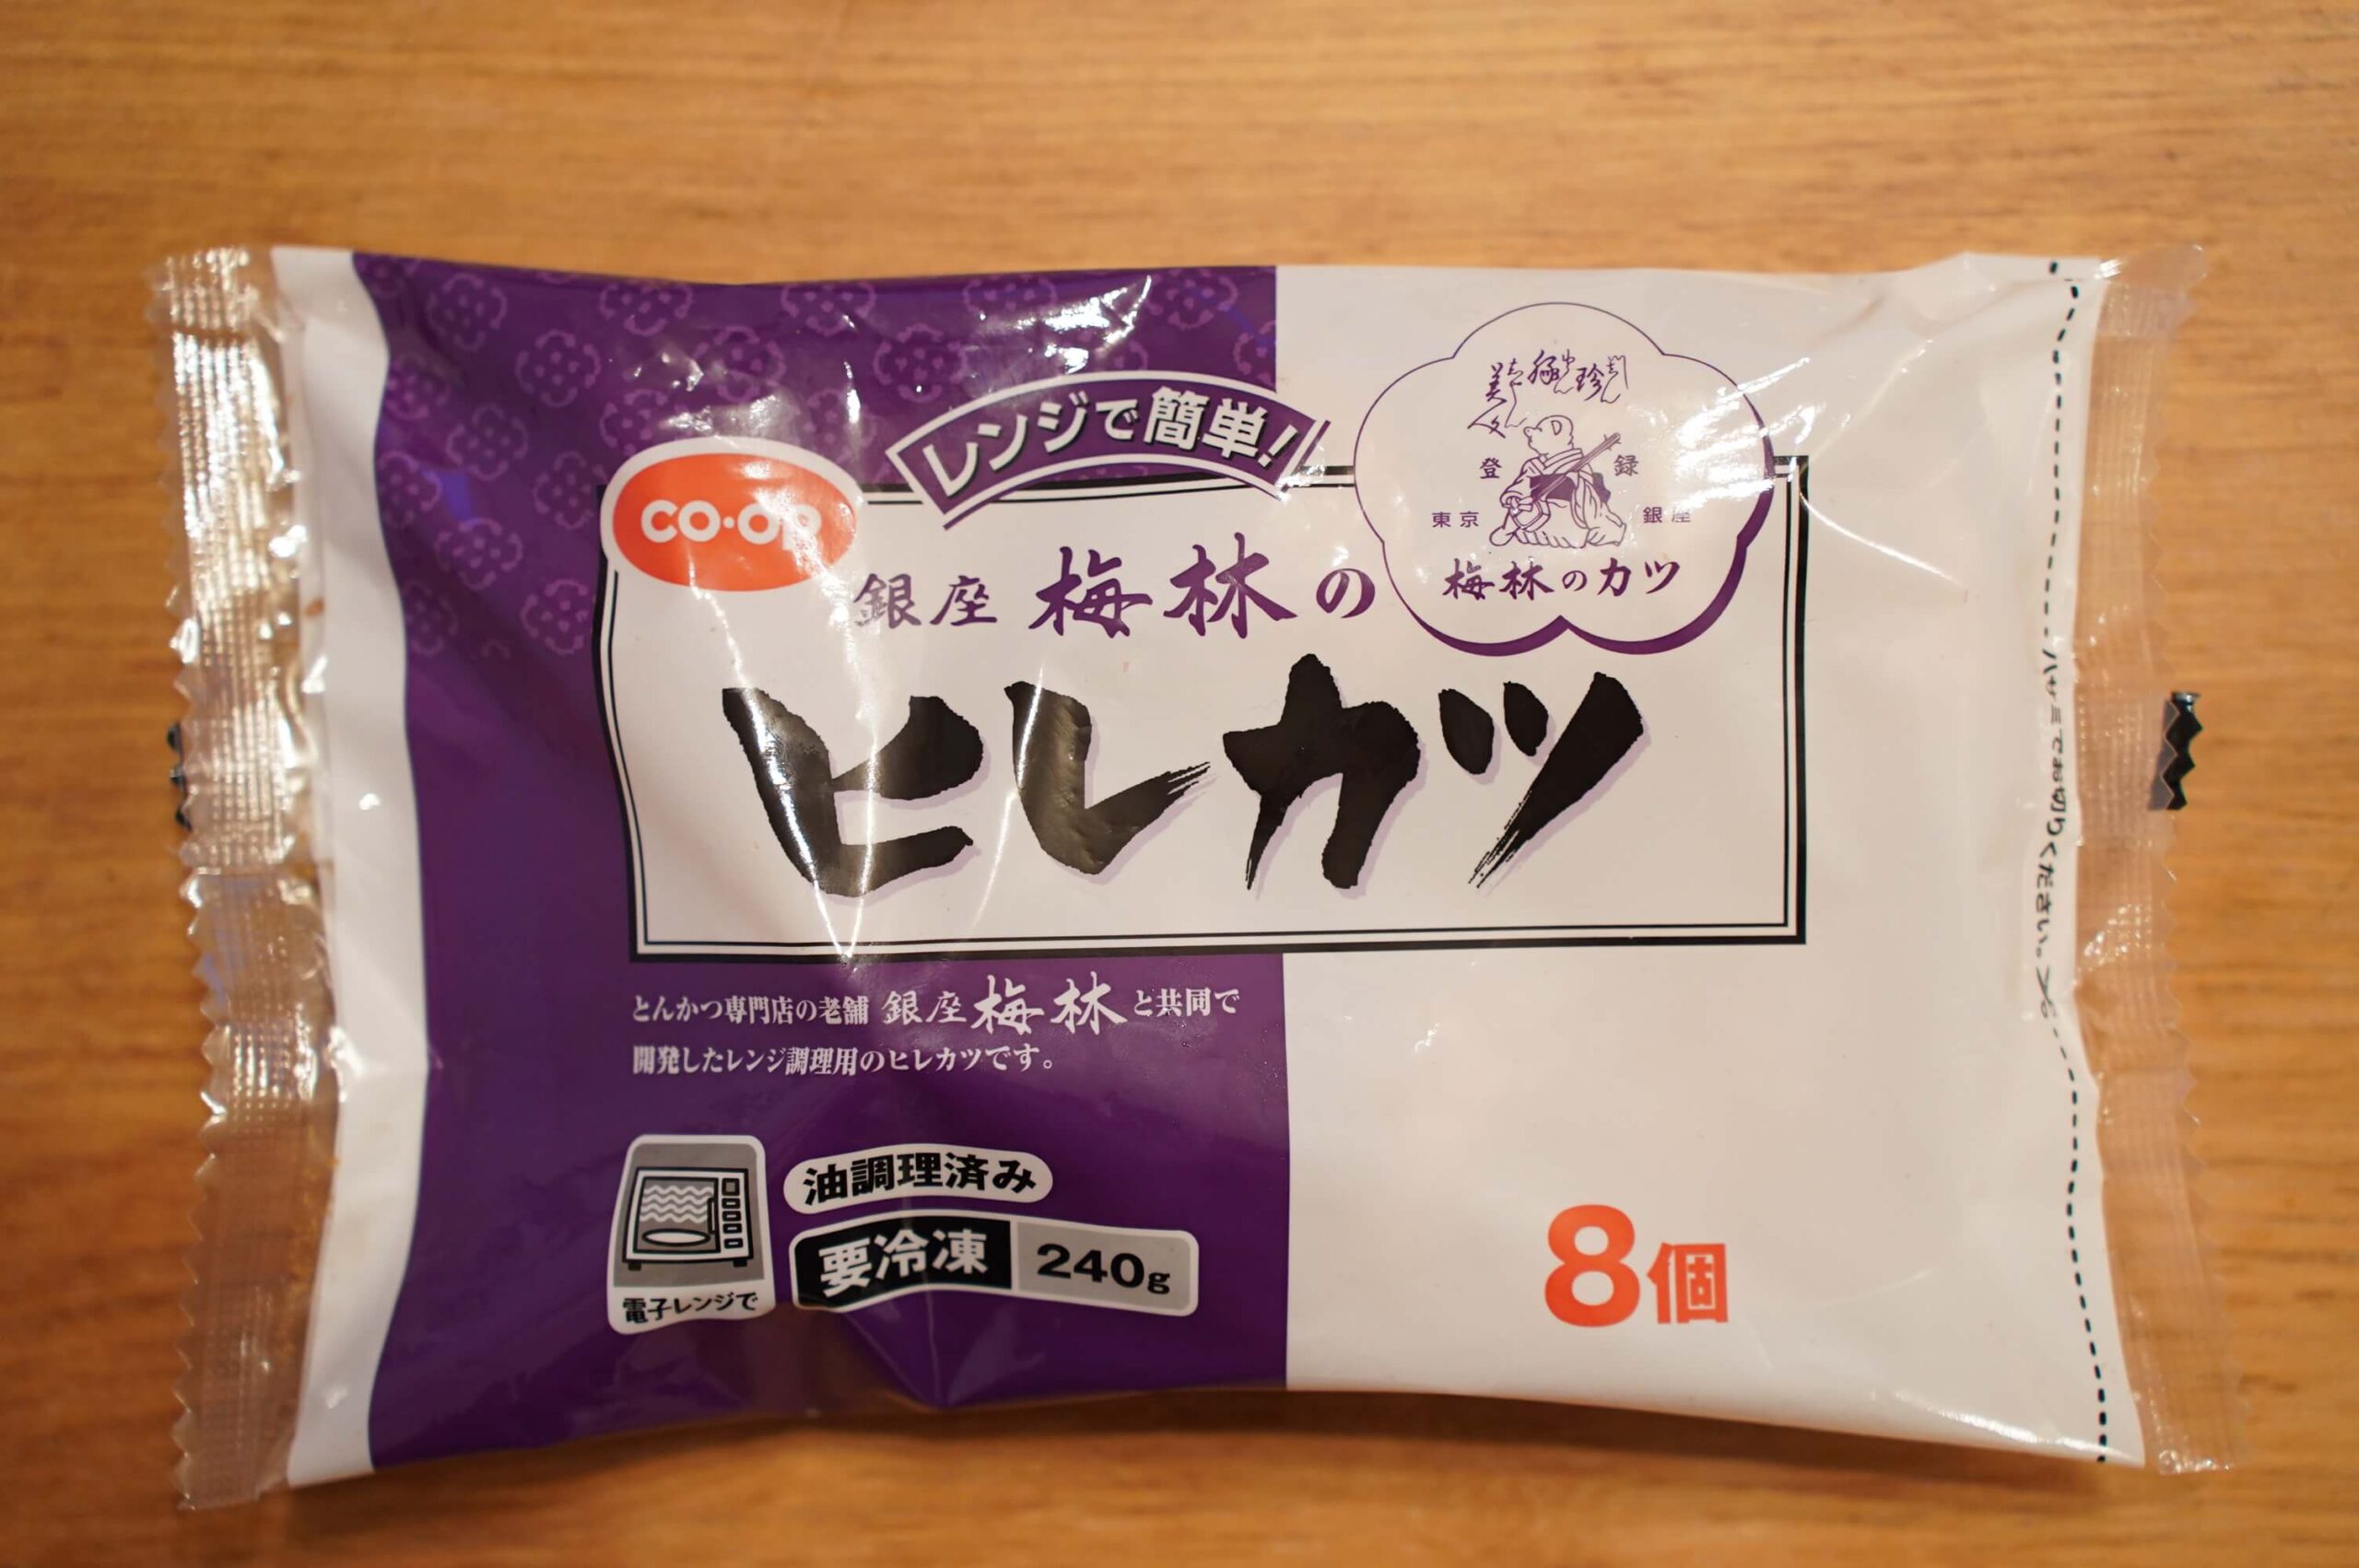 生協coop宅配の冷凍食品・ニチレイ「銀座・梅林ヒレカツ」のパッケージ写真